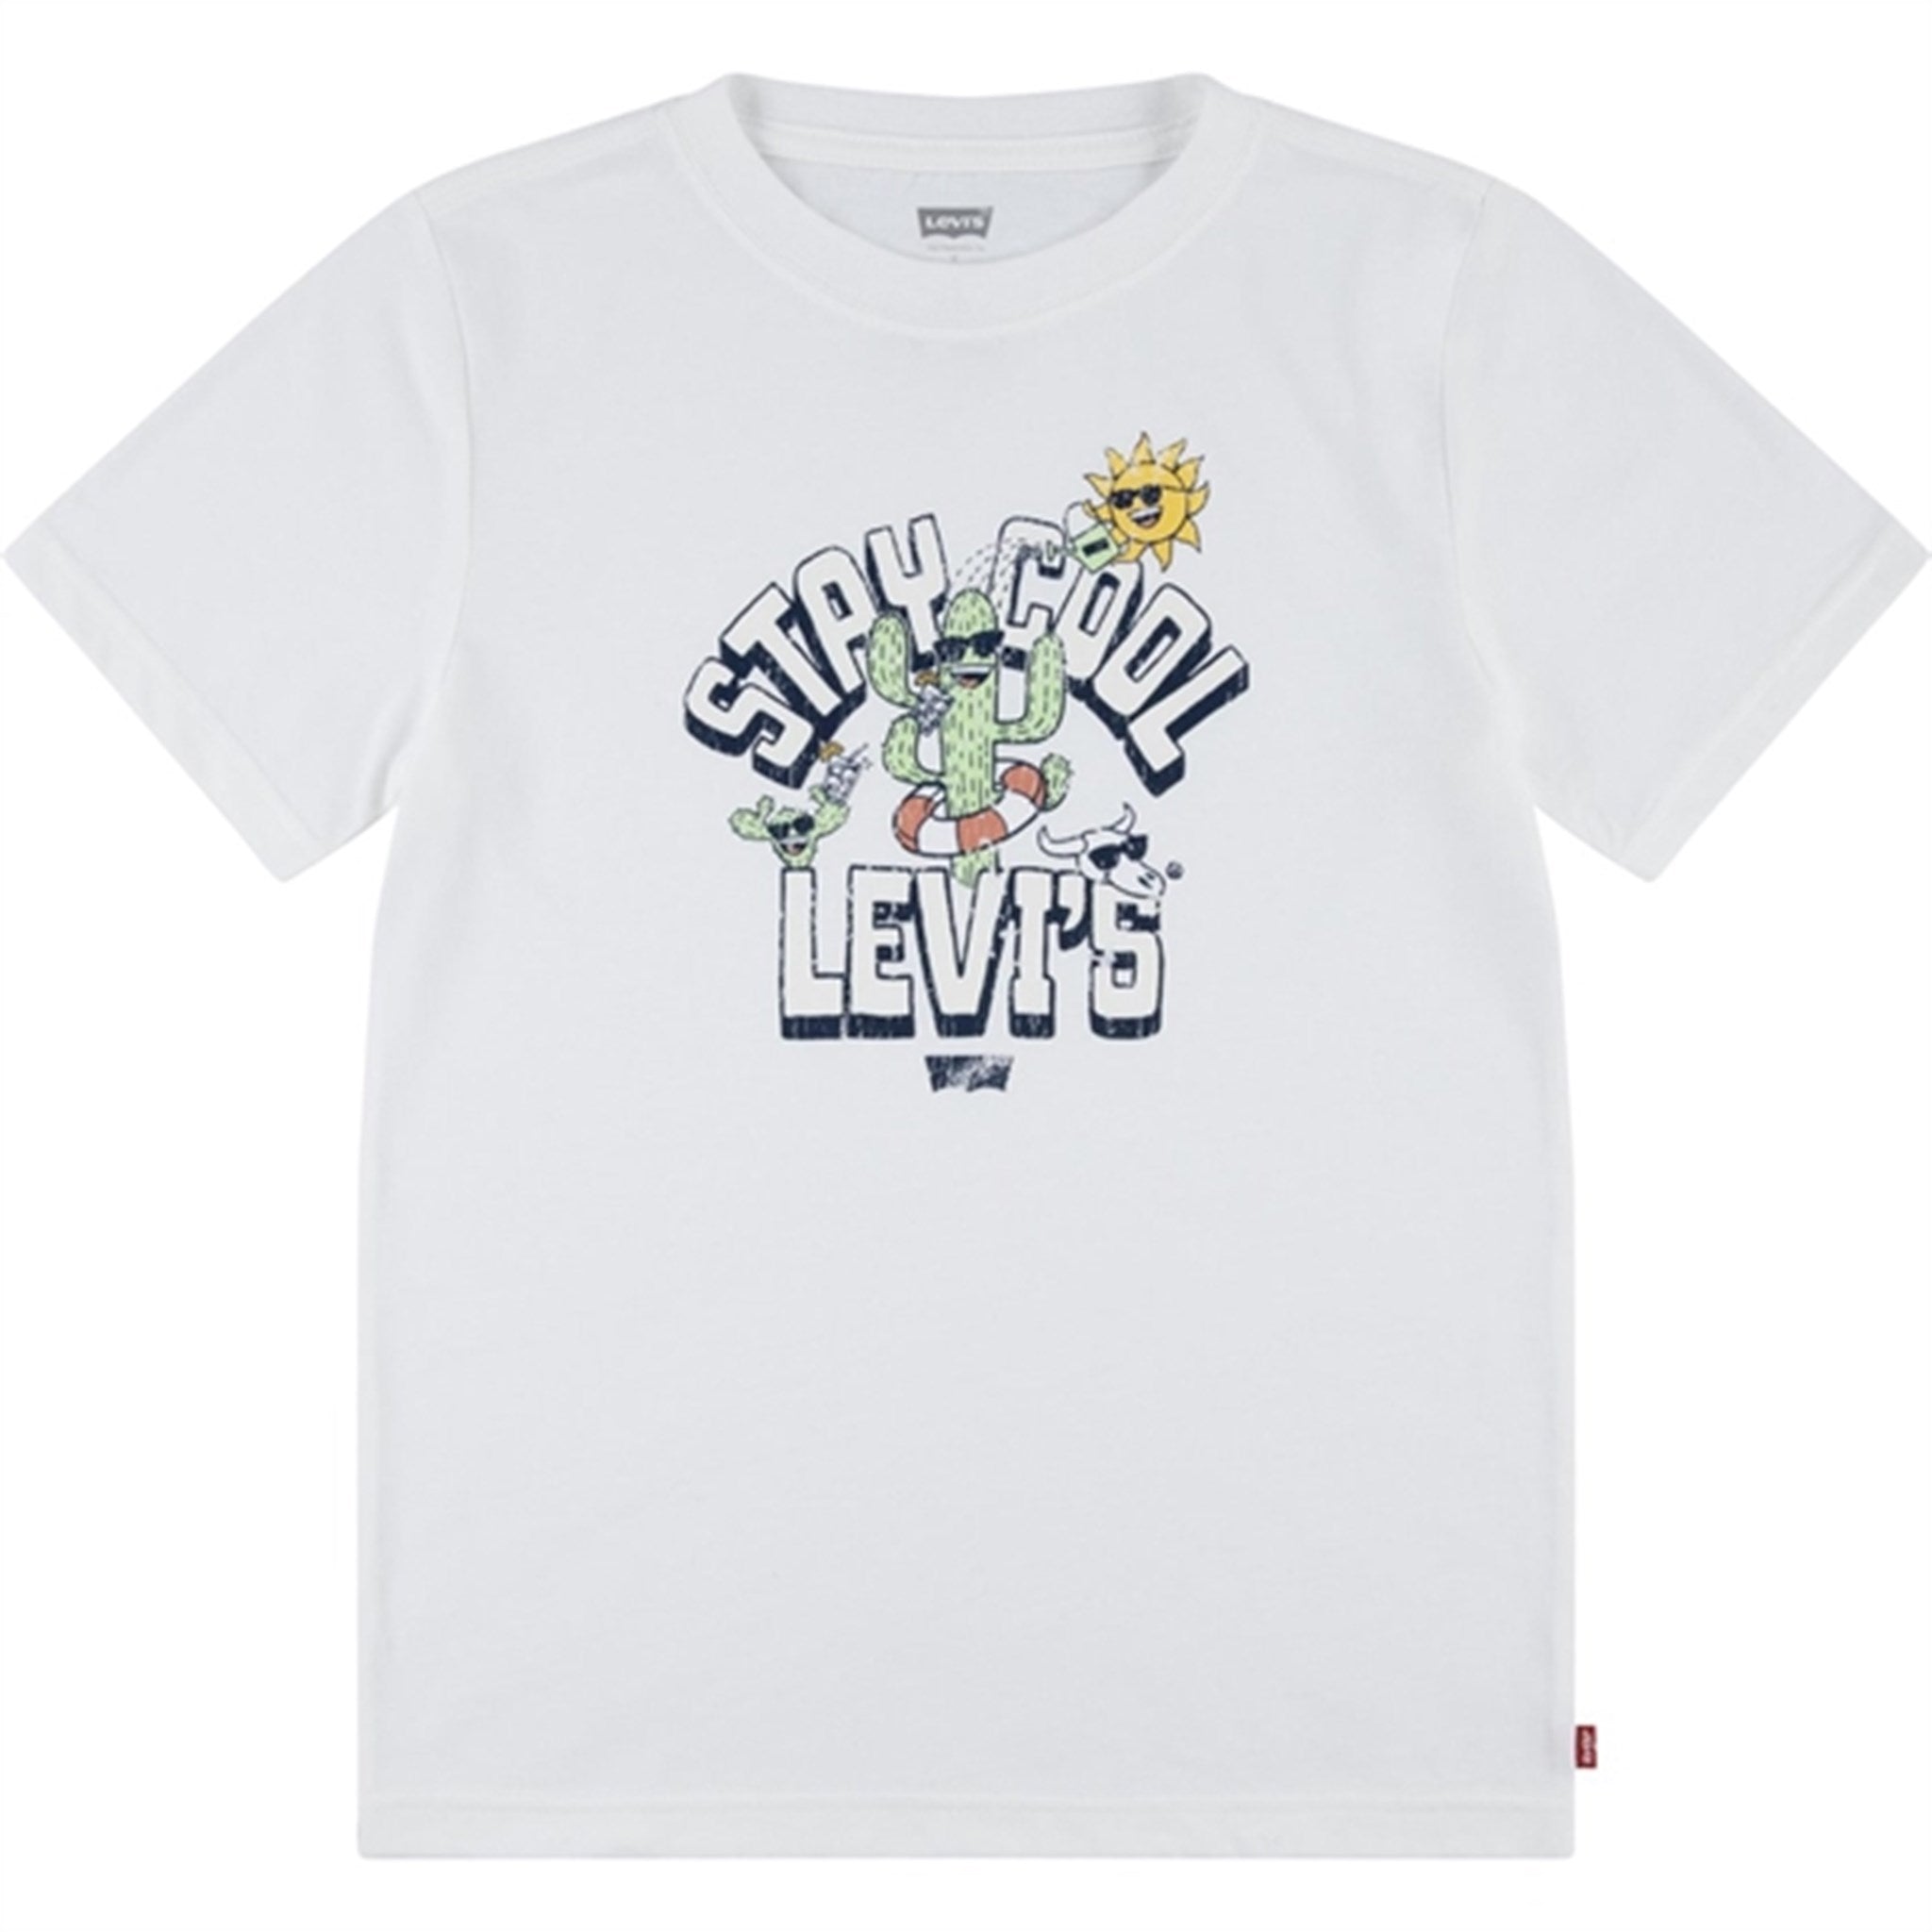 Levi's Bebis Stay Cool Levi's T-Shirt Cloud Dancer